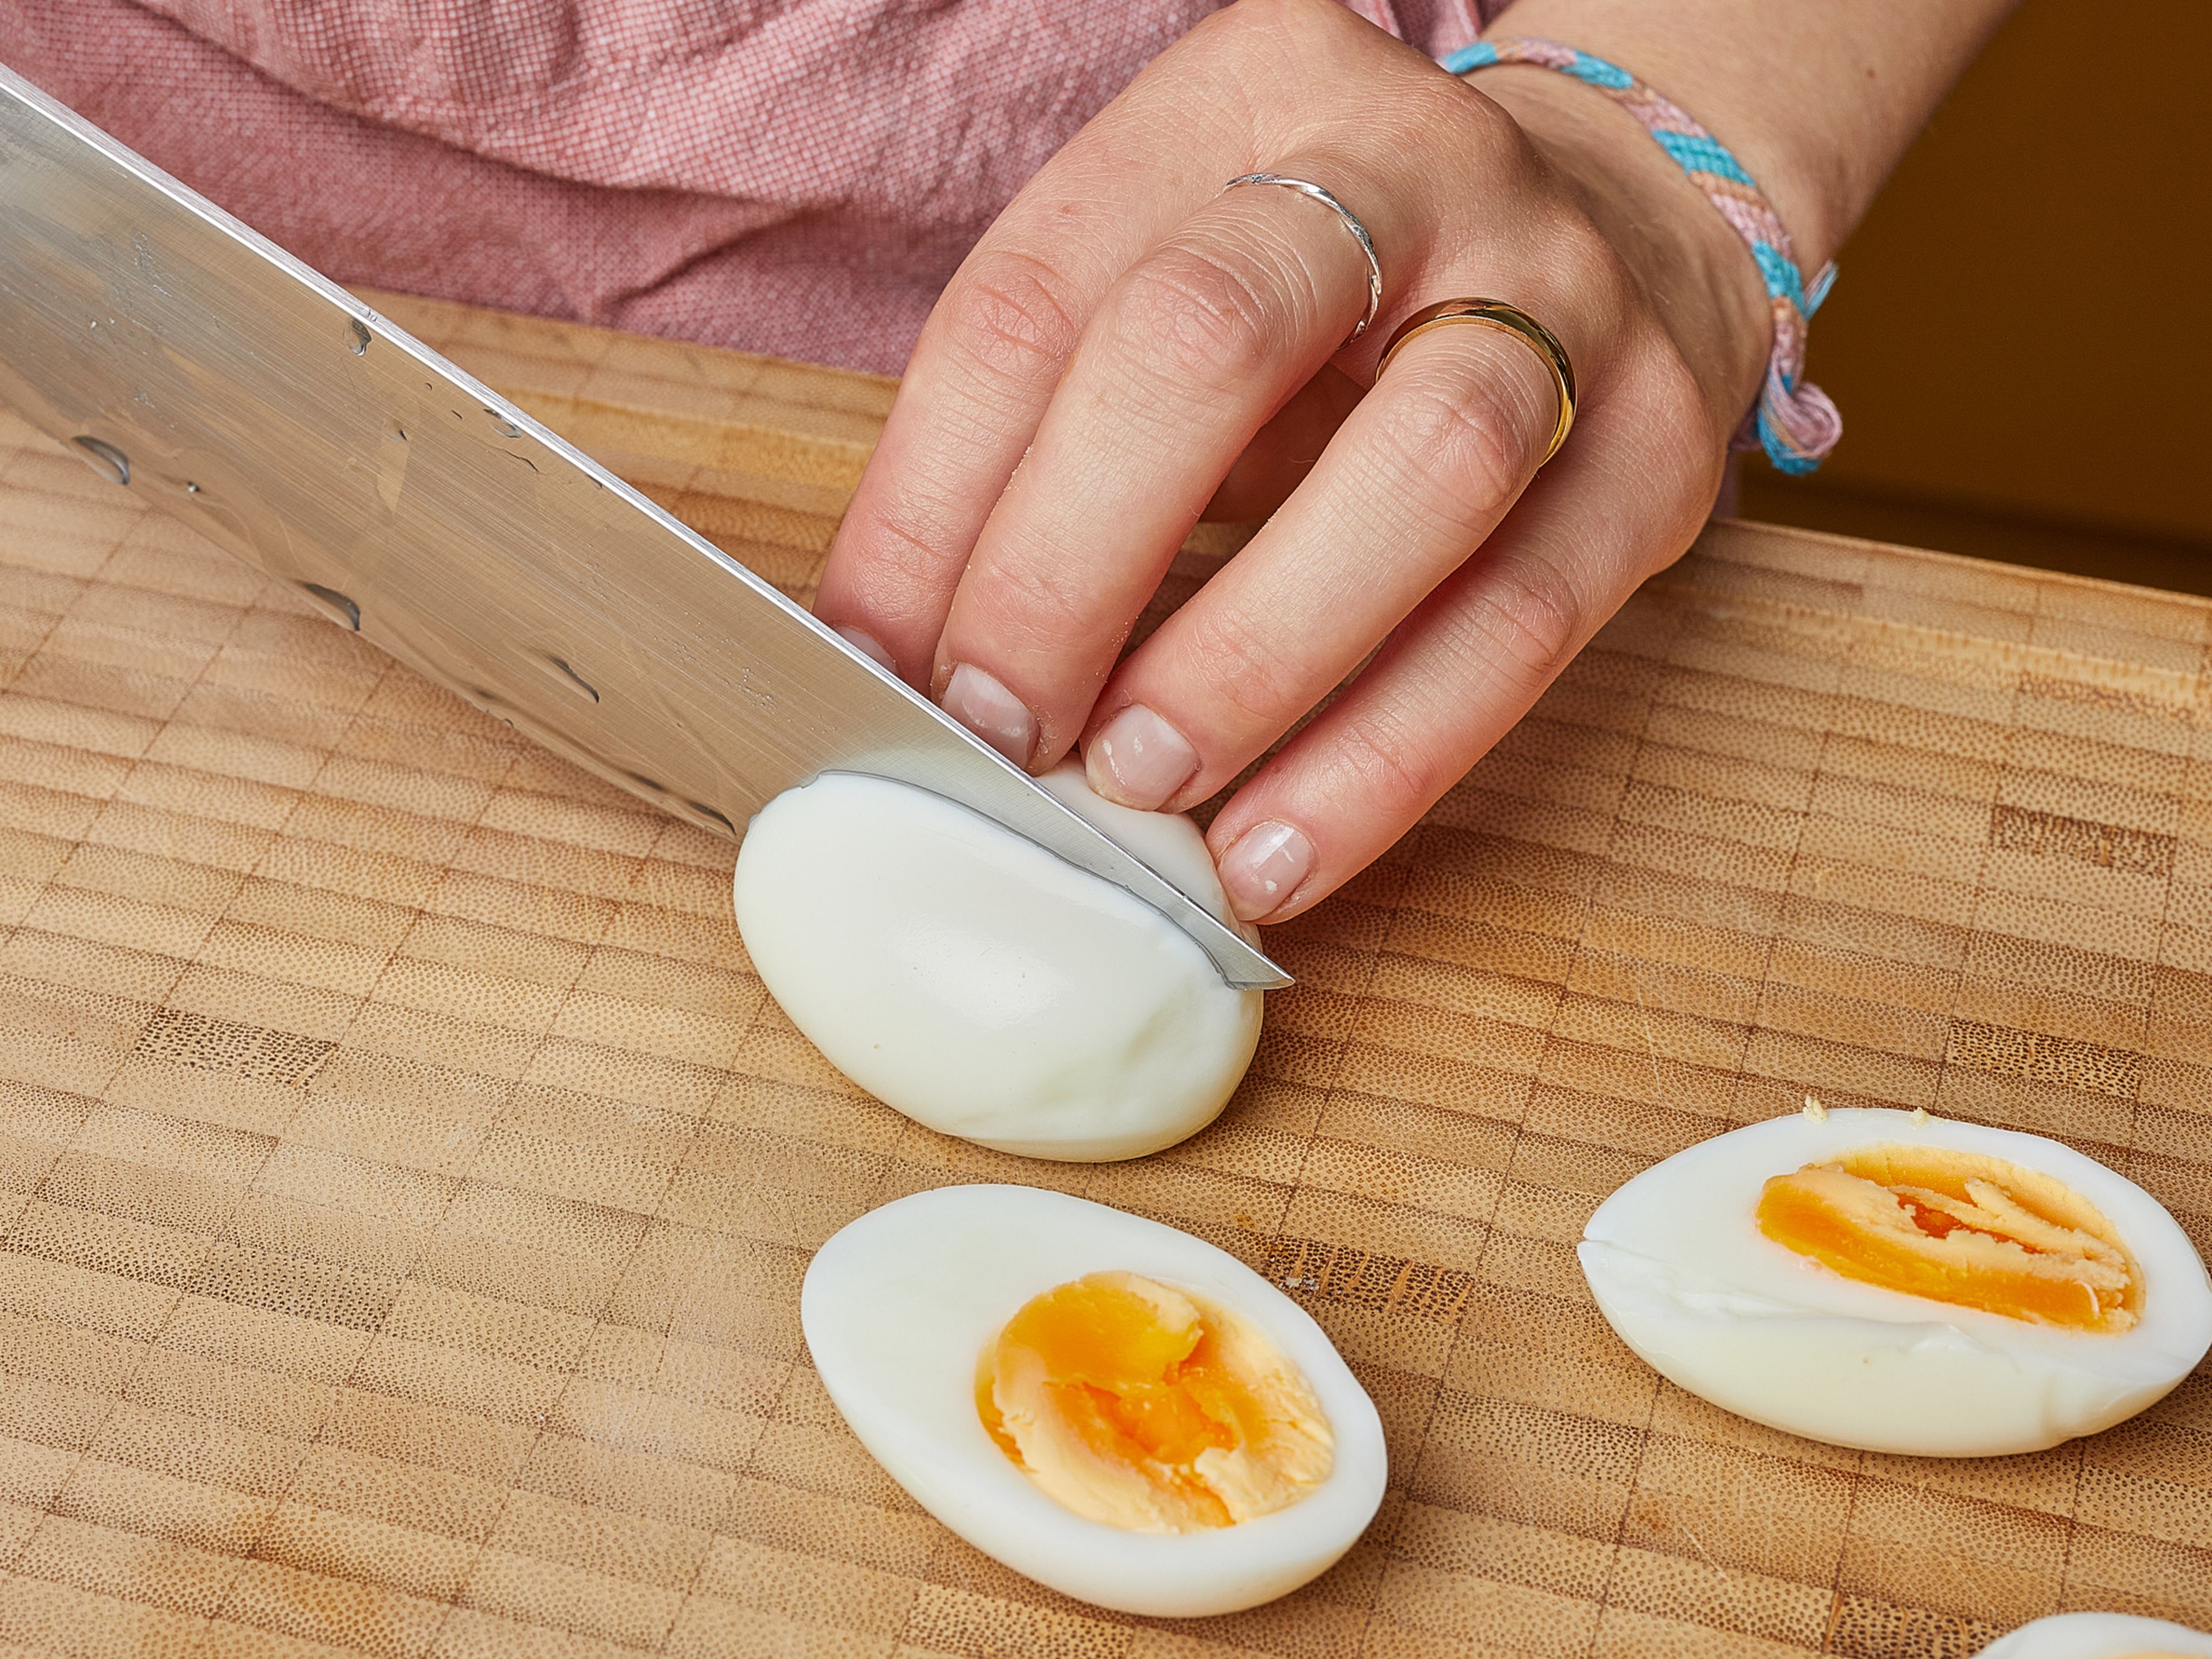 In der Zwischenzeit einen Topf mit Wasser zum Kochen bringen. Die Eier hineingeben und ca. 6–7 Min. kochen, dann herausnehmen und unter fliessendem kaltem Wasser abschrecken. Sobald die Eier abgekühlt sind, schälen, halbieren und beiseite stellen.